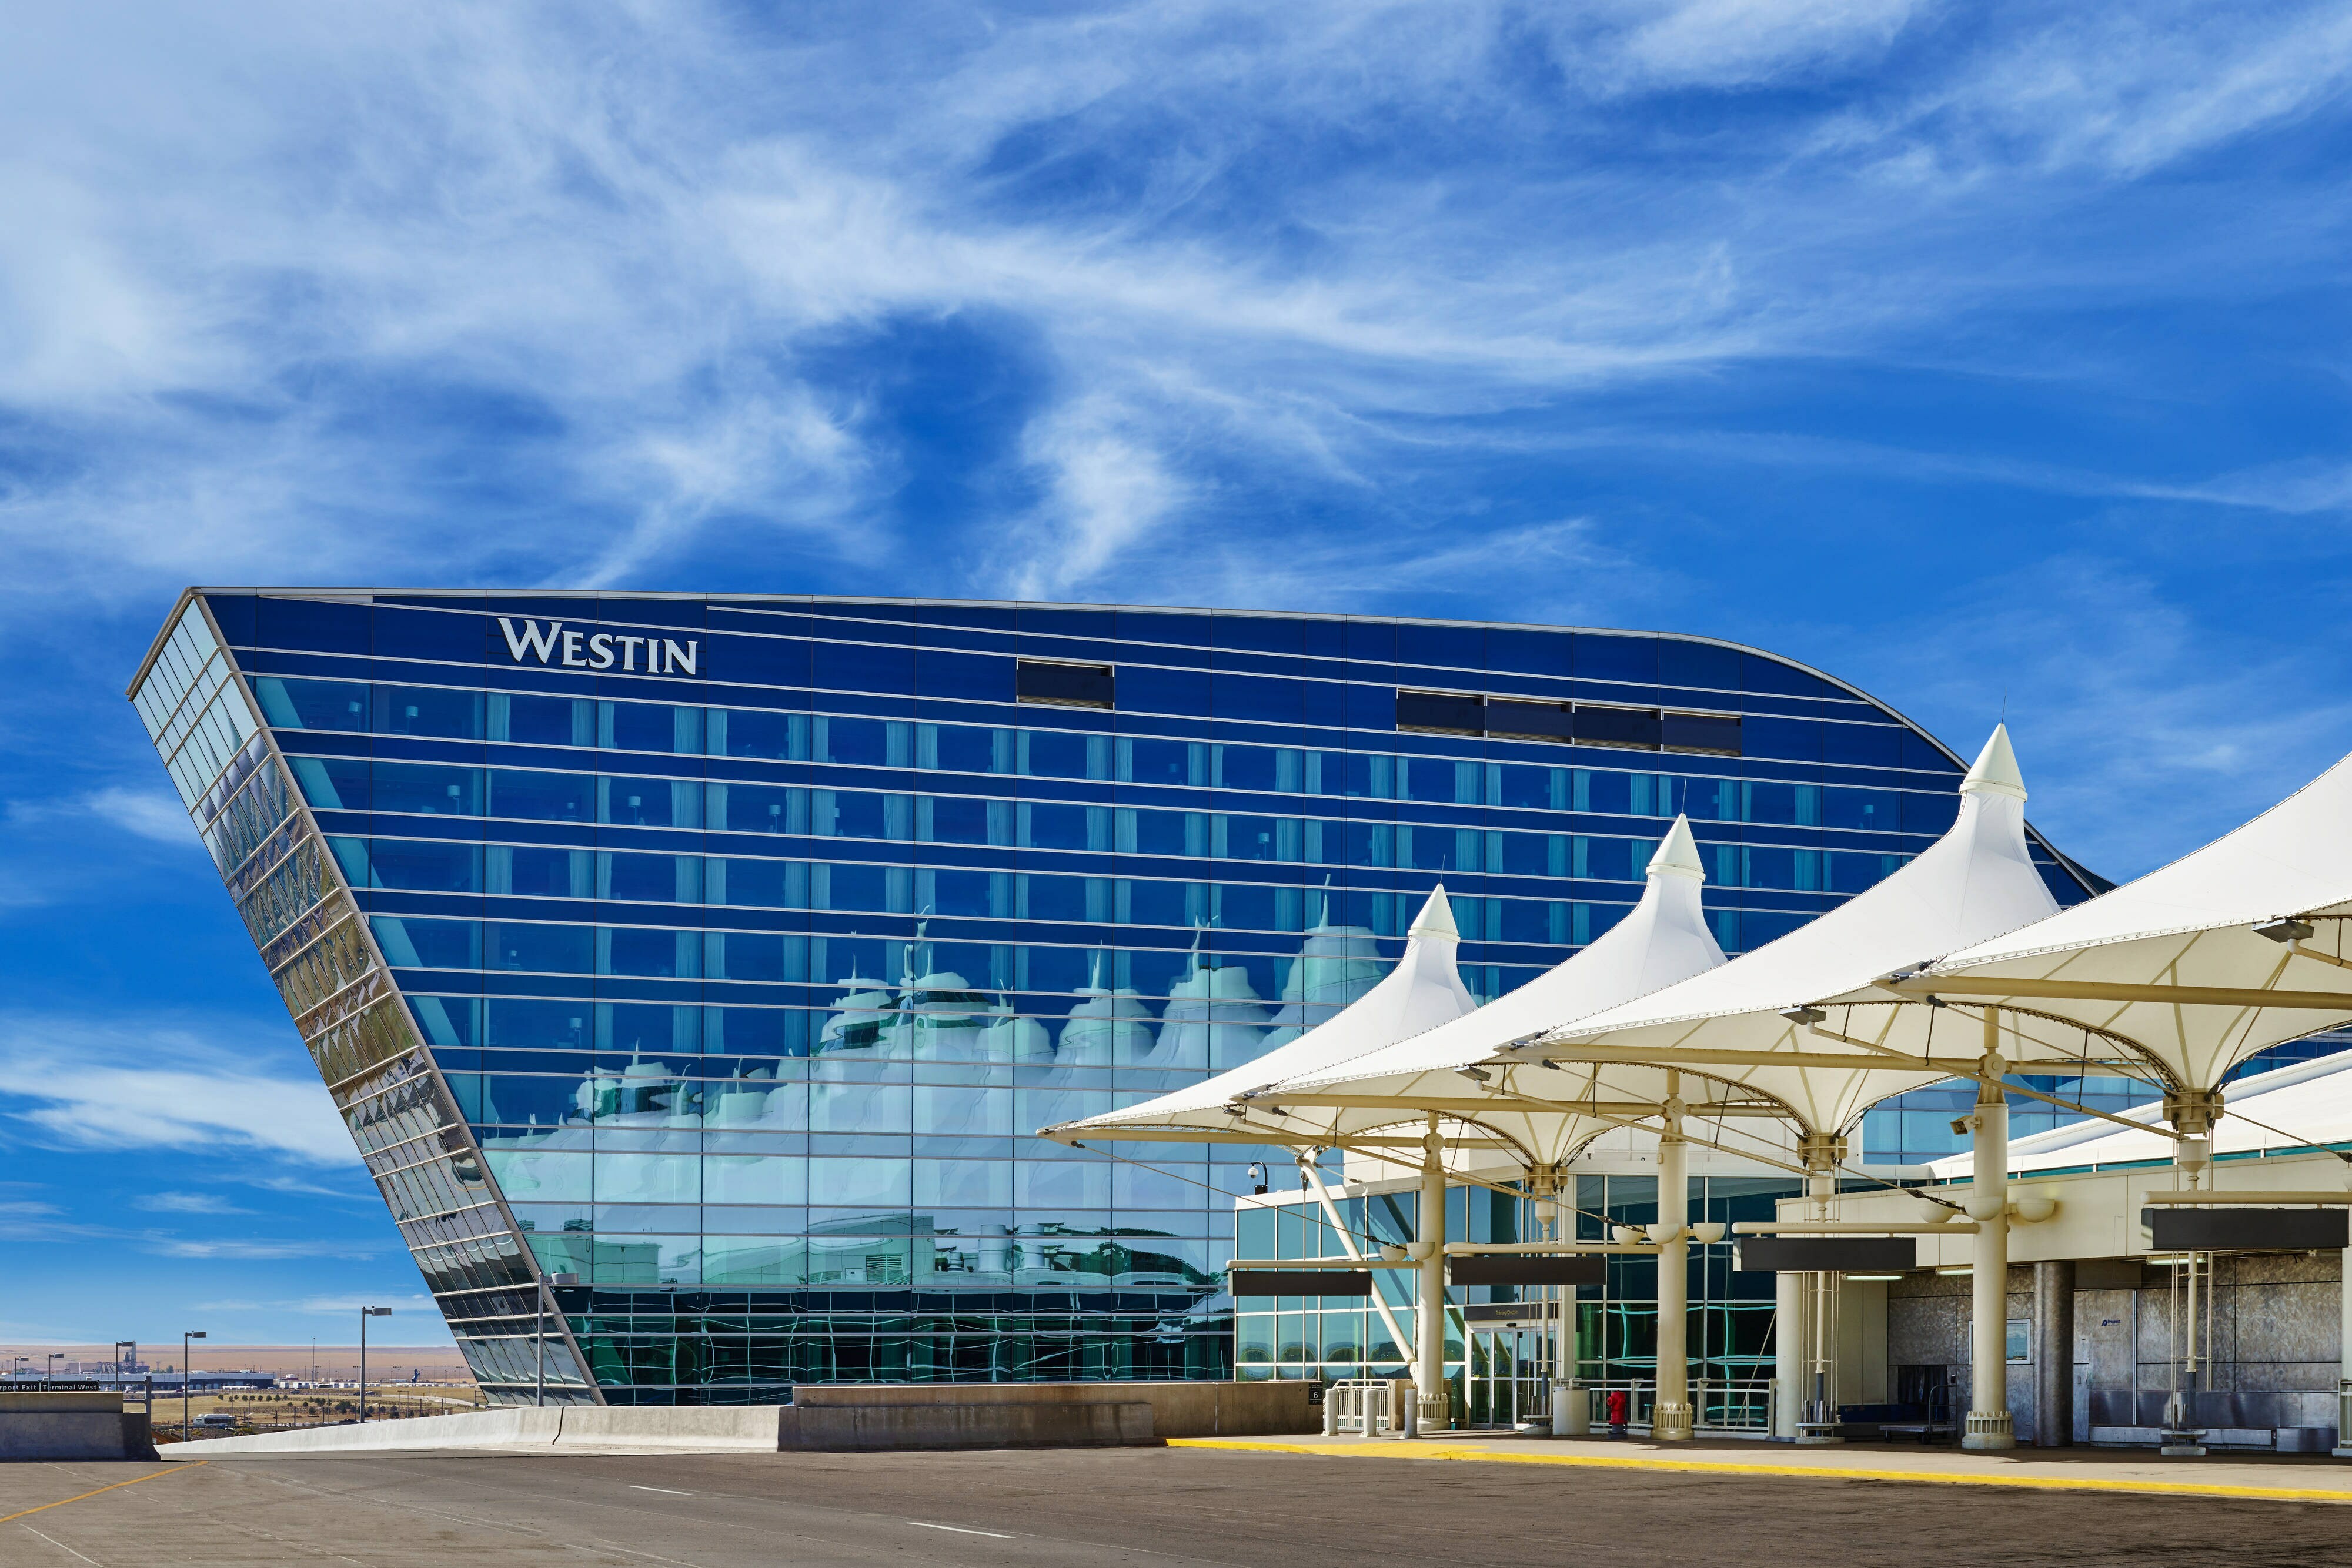 Photo of The Westin Denver International Airport, Denver, CO